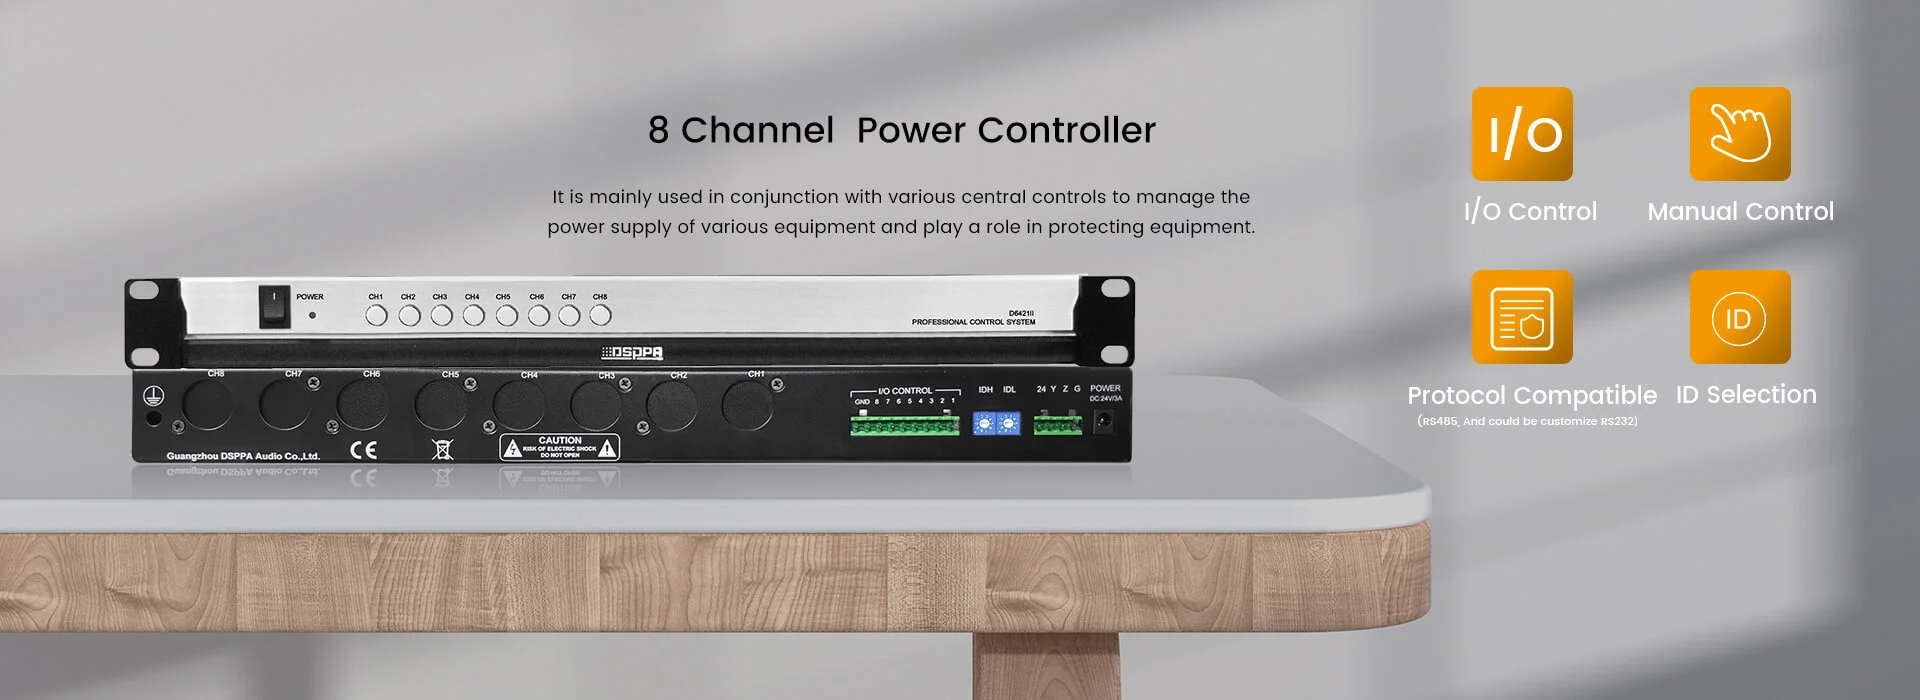 Controlador de potencia de conferencia de 8 canales